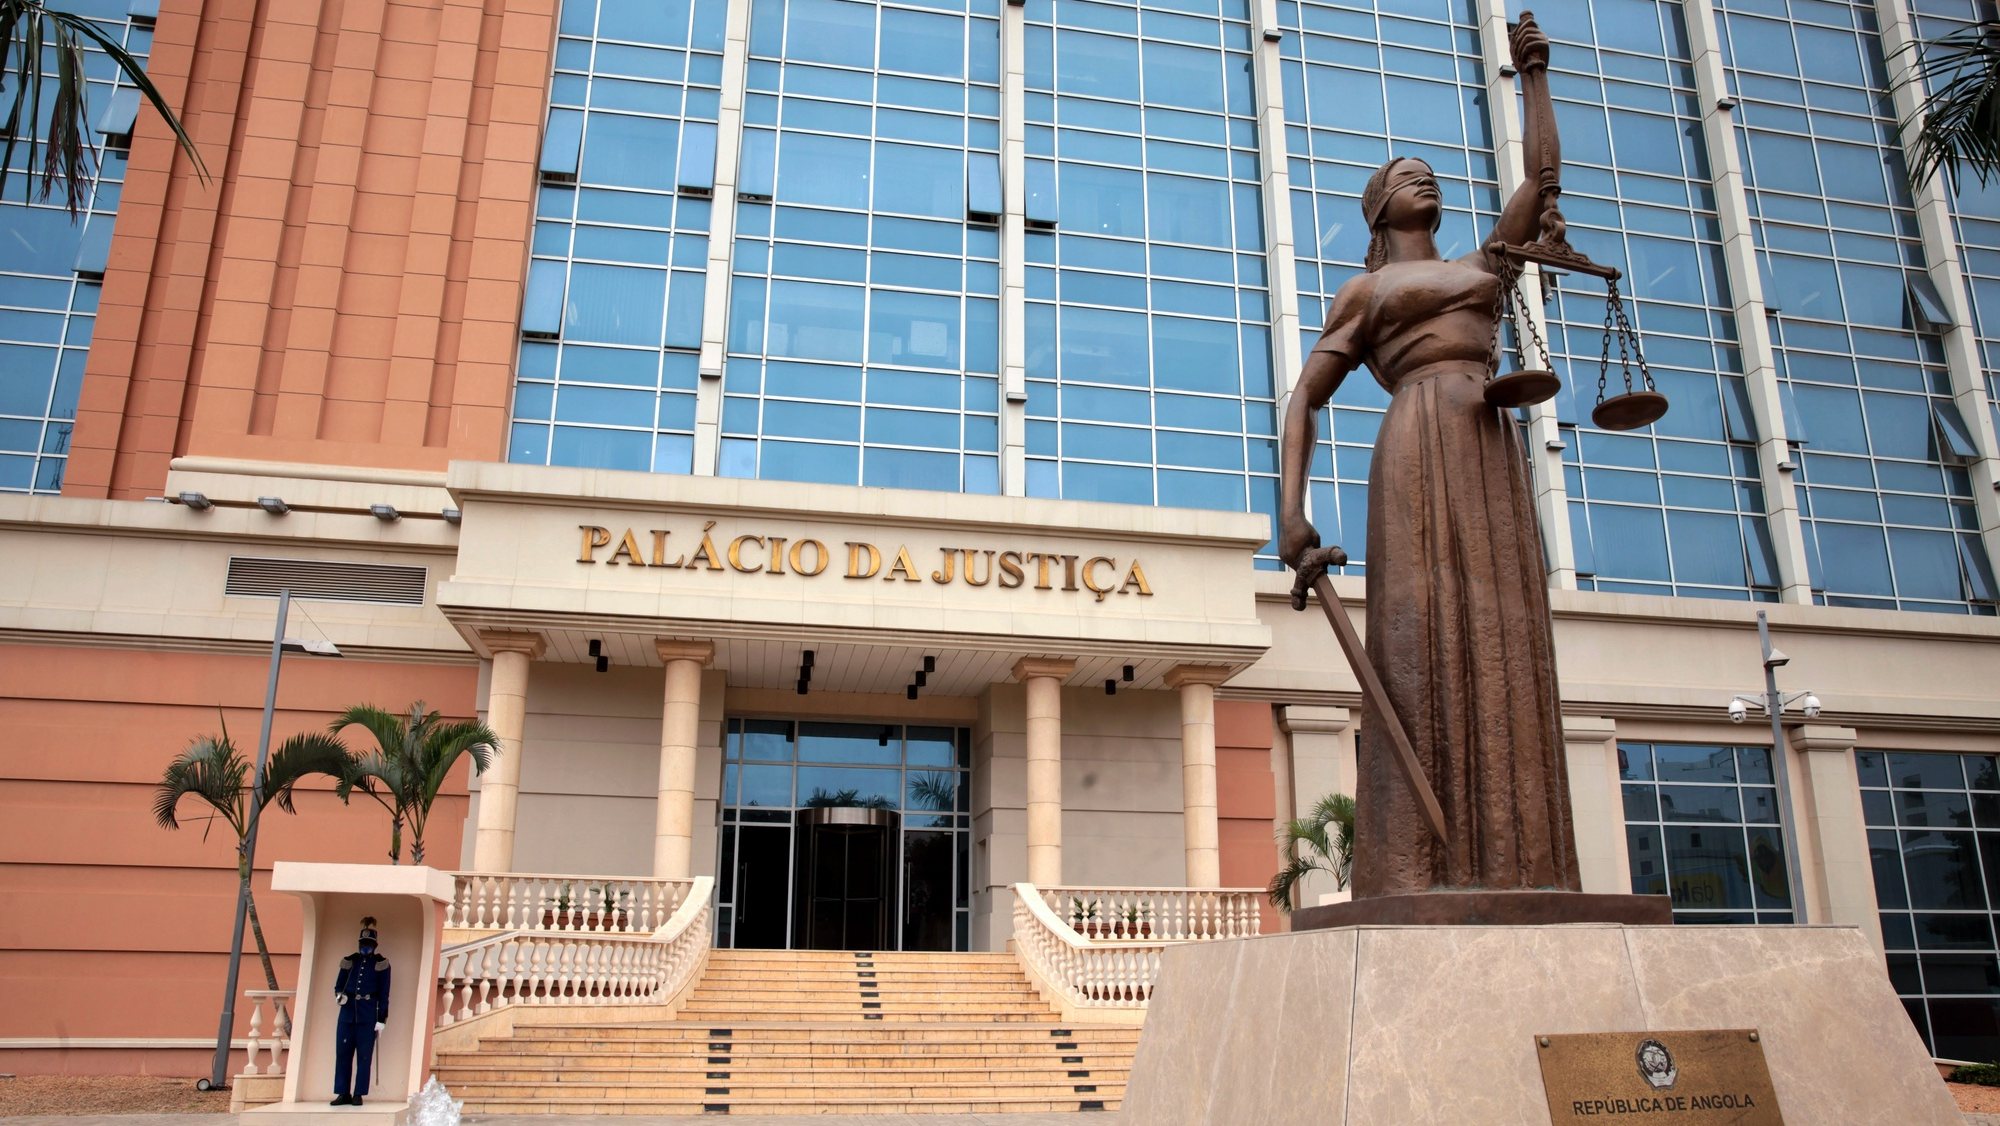 Sede da Palácio da Justiça onde decorre o julgamento do Caso BNA 500 Milhões, Luanda, Angola, 14 de agosto de 2020.  AMPE ROGERIO/LUSA